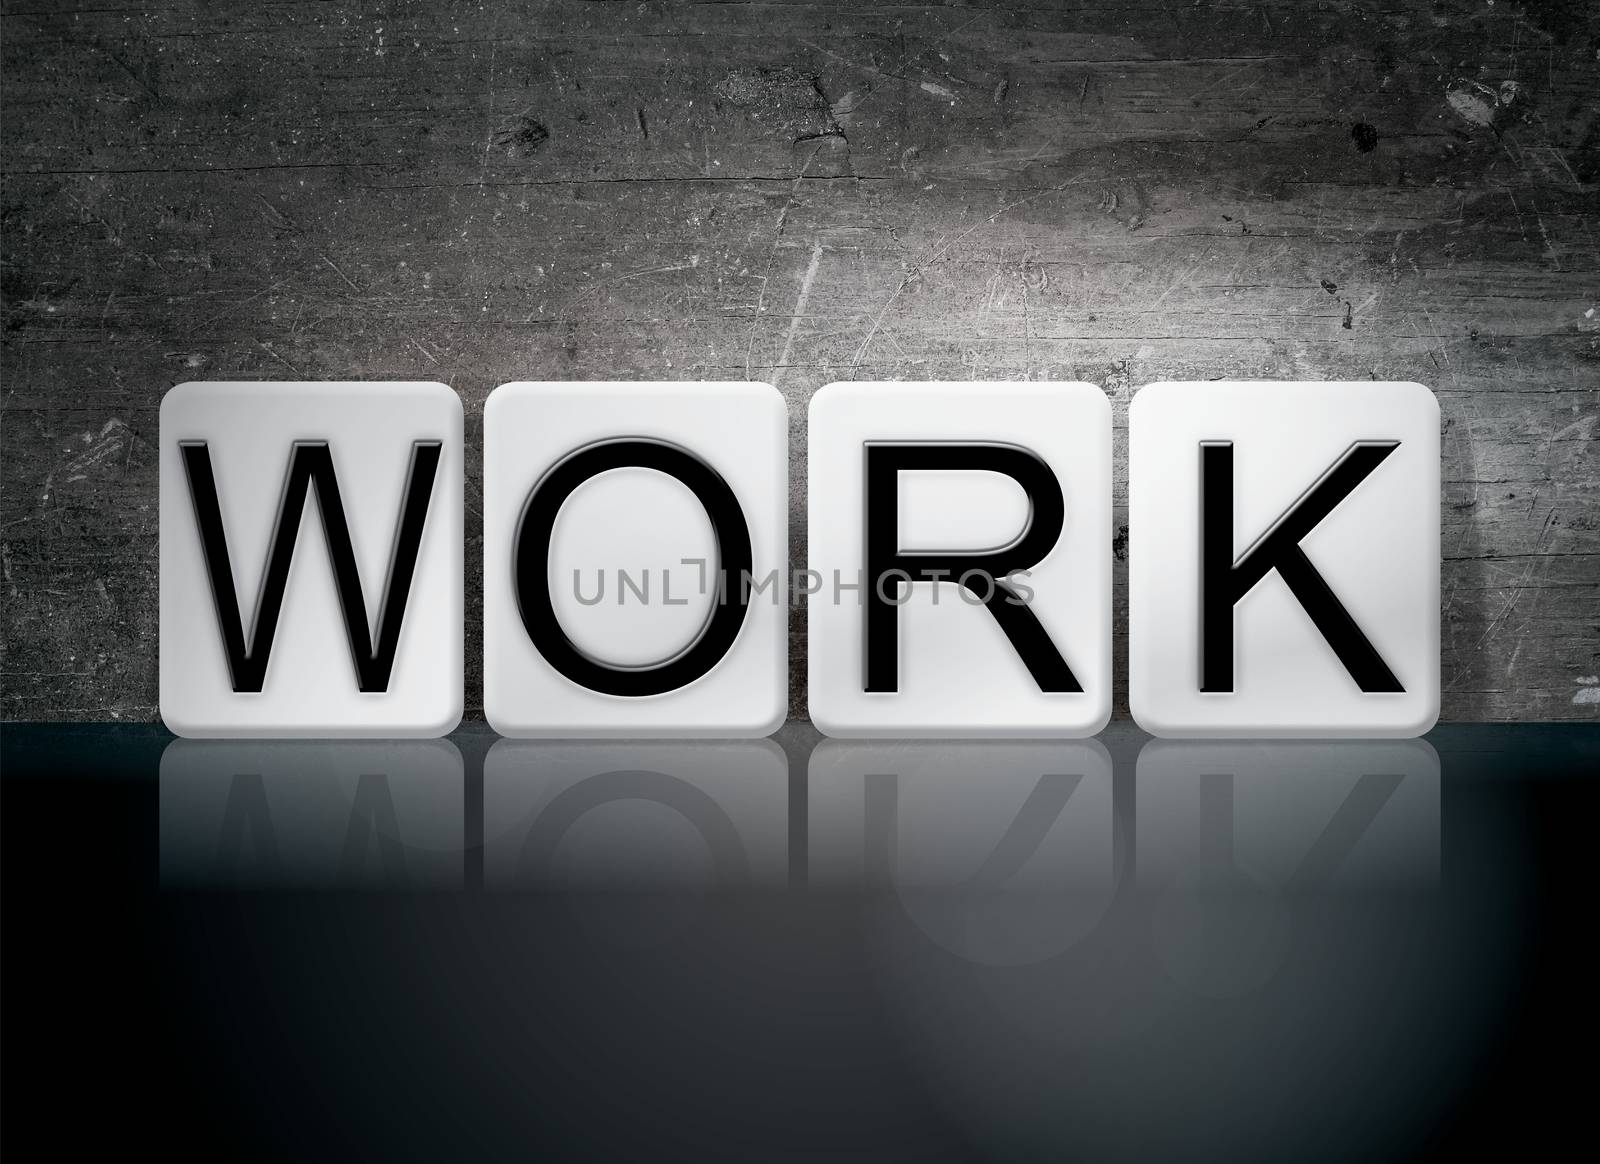 The word "Work" written in white tiles against a dark vintage grunge background.